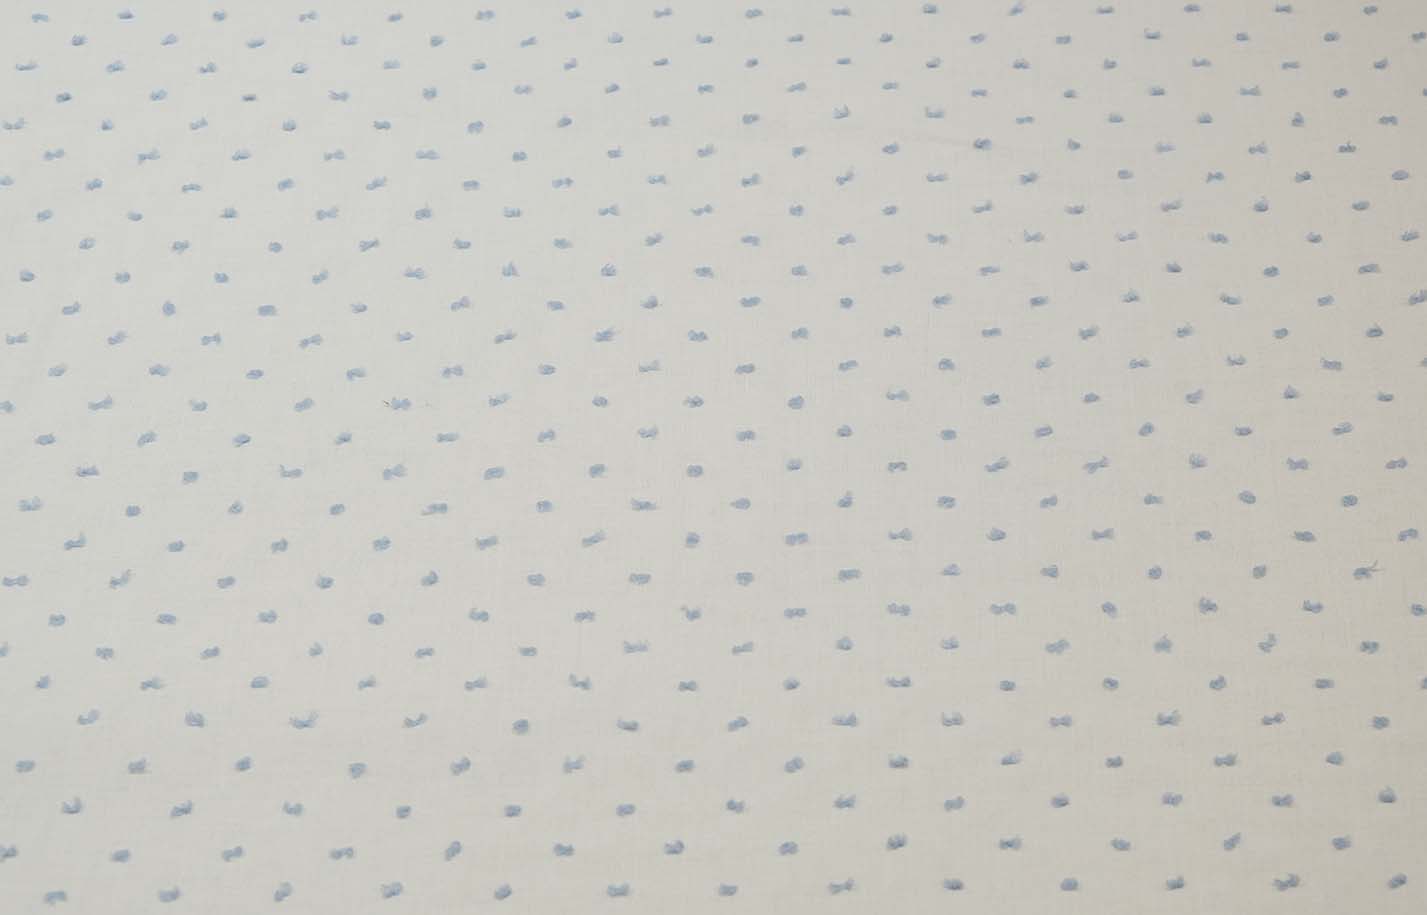 Baumwollstoff mit Punkten in blau und weiss